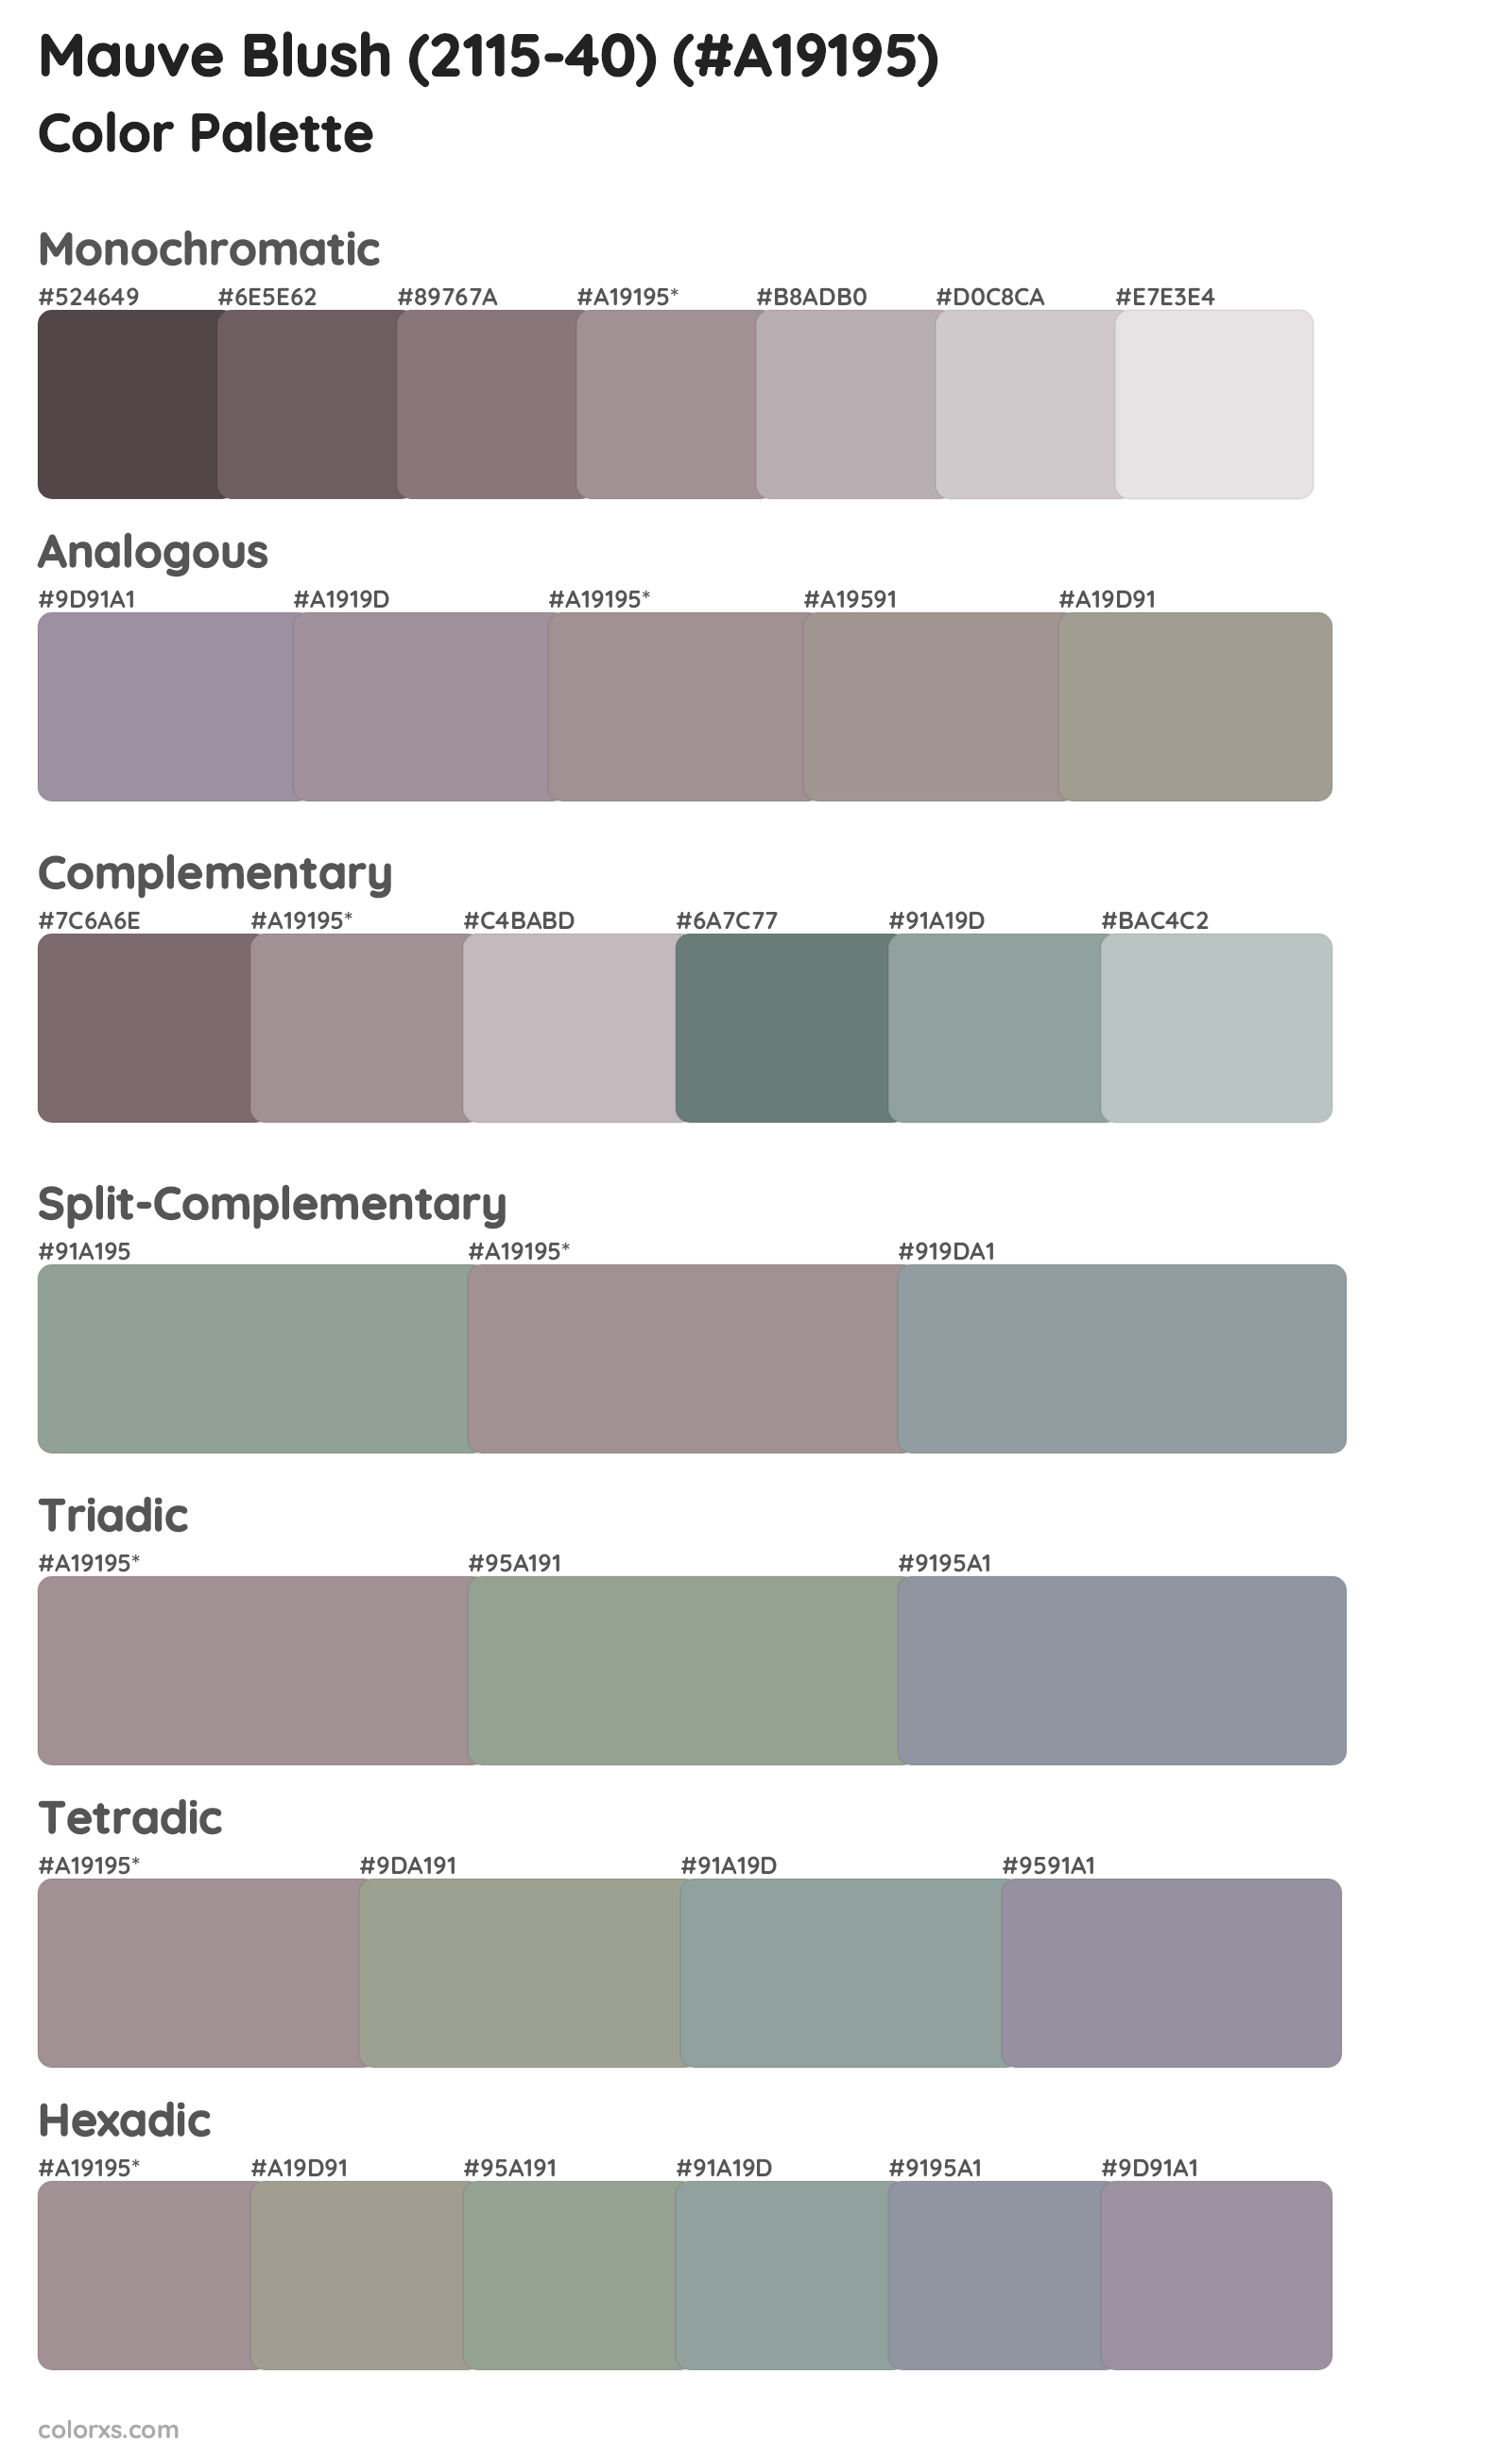 Mauve Blush (2115-40) Color Scheme Palettes